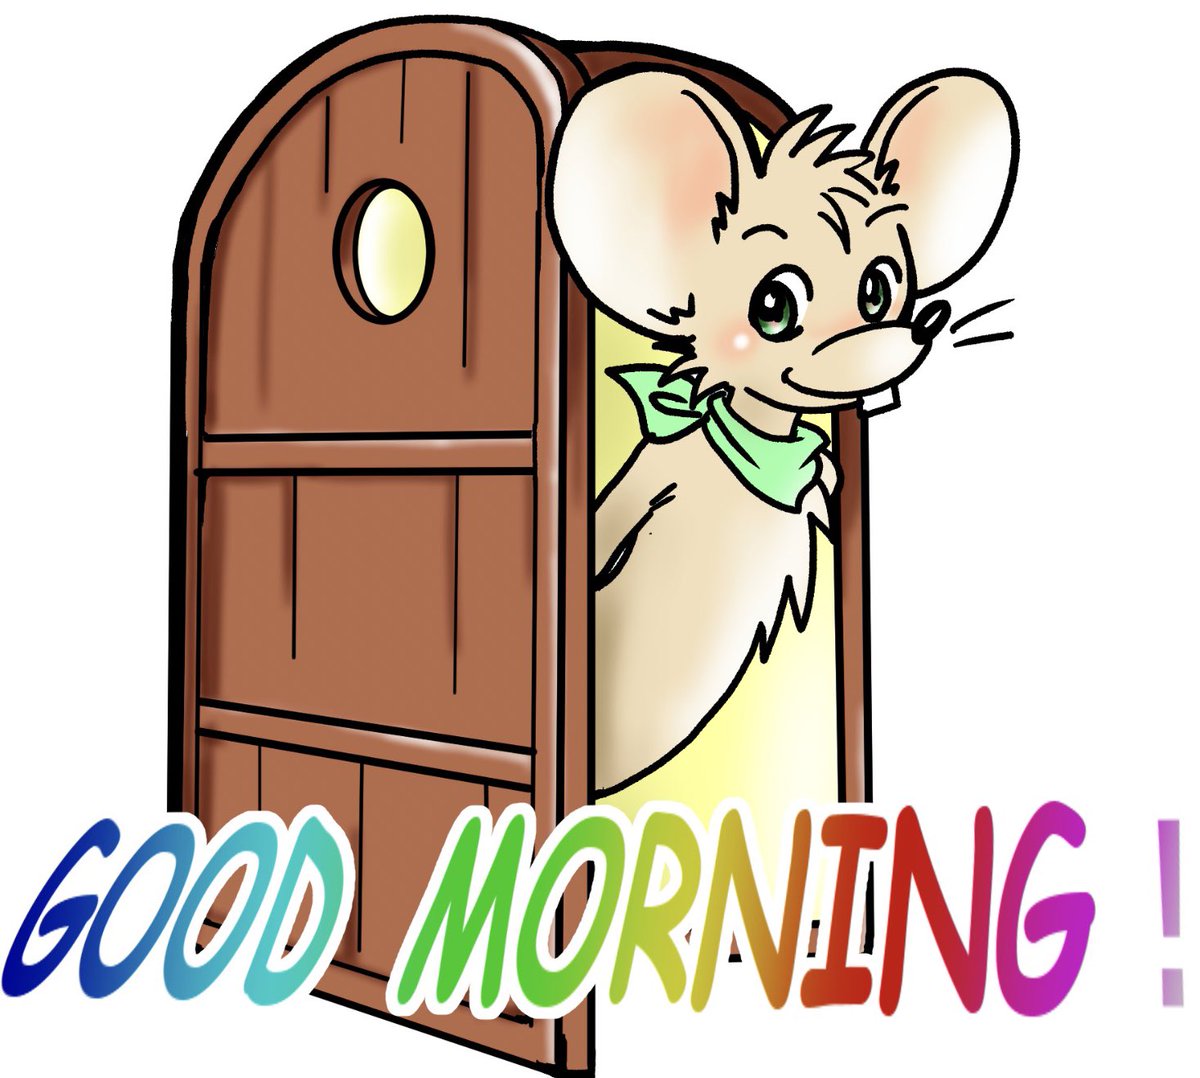 #ネズミの日
にゃんこの日でもあるし、ちゅーちゅーちゅーの日でもあるとは!😆✨
名前もそのまんまちゅーちゅー🐭✨

ちゅーちゅー🐭がちゅーちゅーって言いますねん_(┐「ε:)_ズコー 